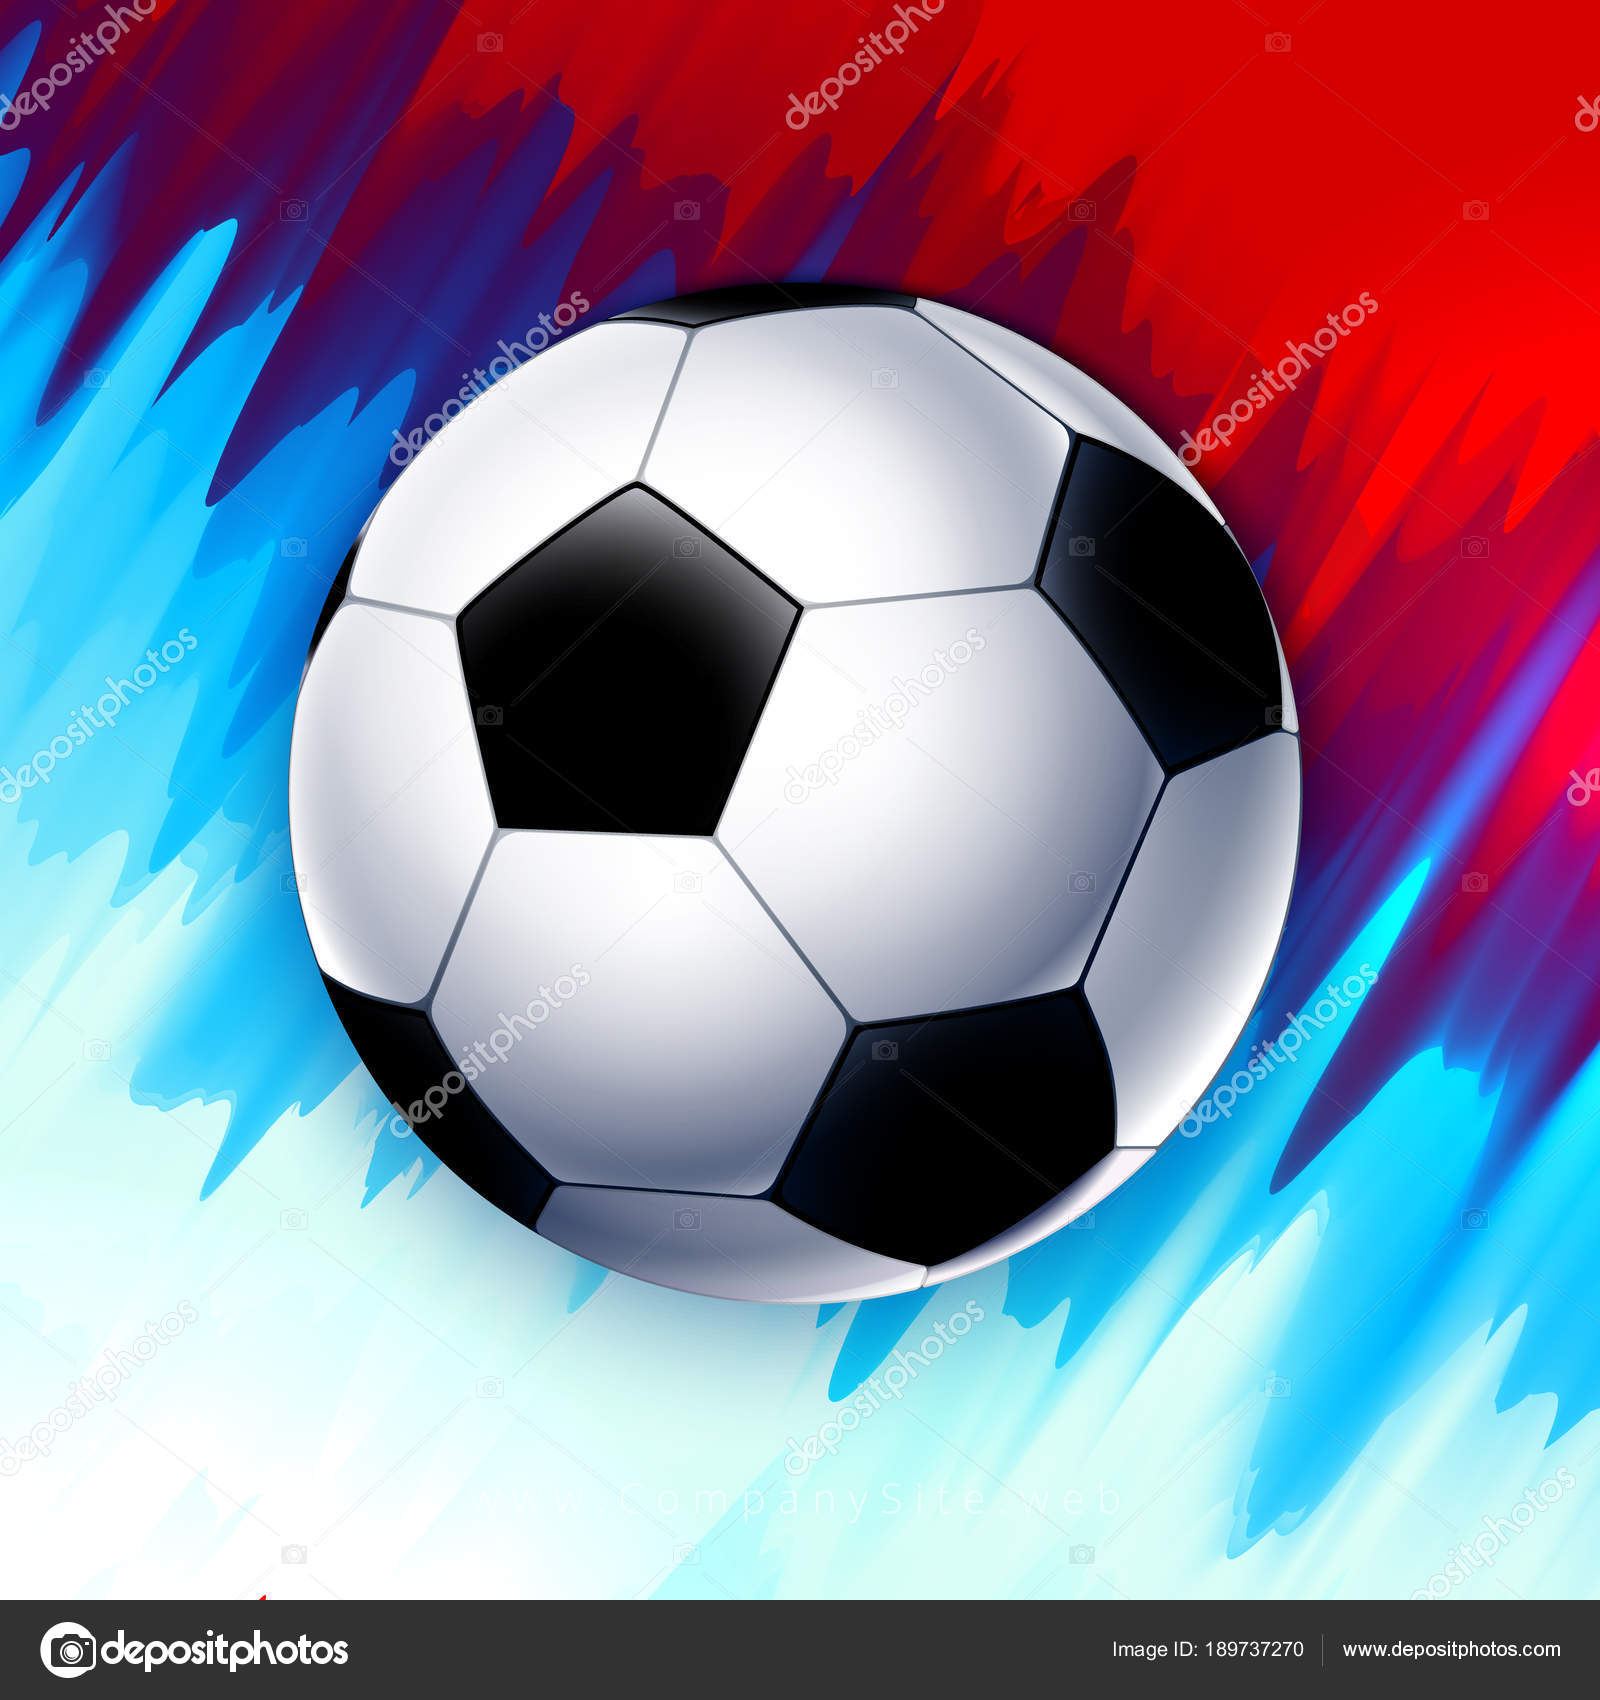 futebol wallpaper,balón de fútbol,fútbol americano,fútbol,equipo deportivo,fútbol sala